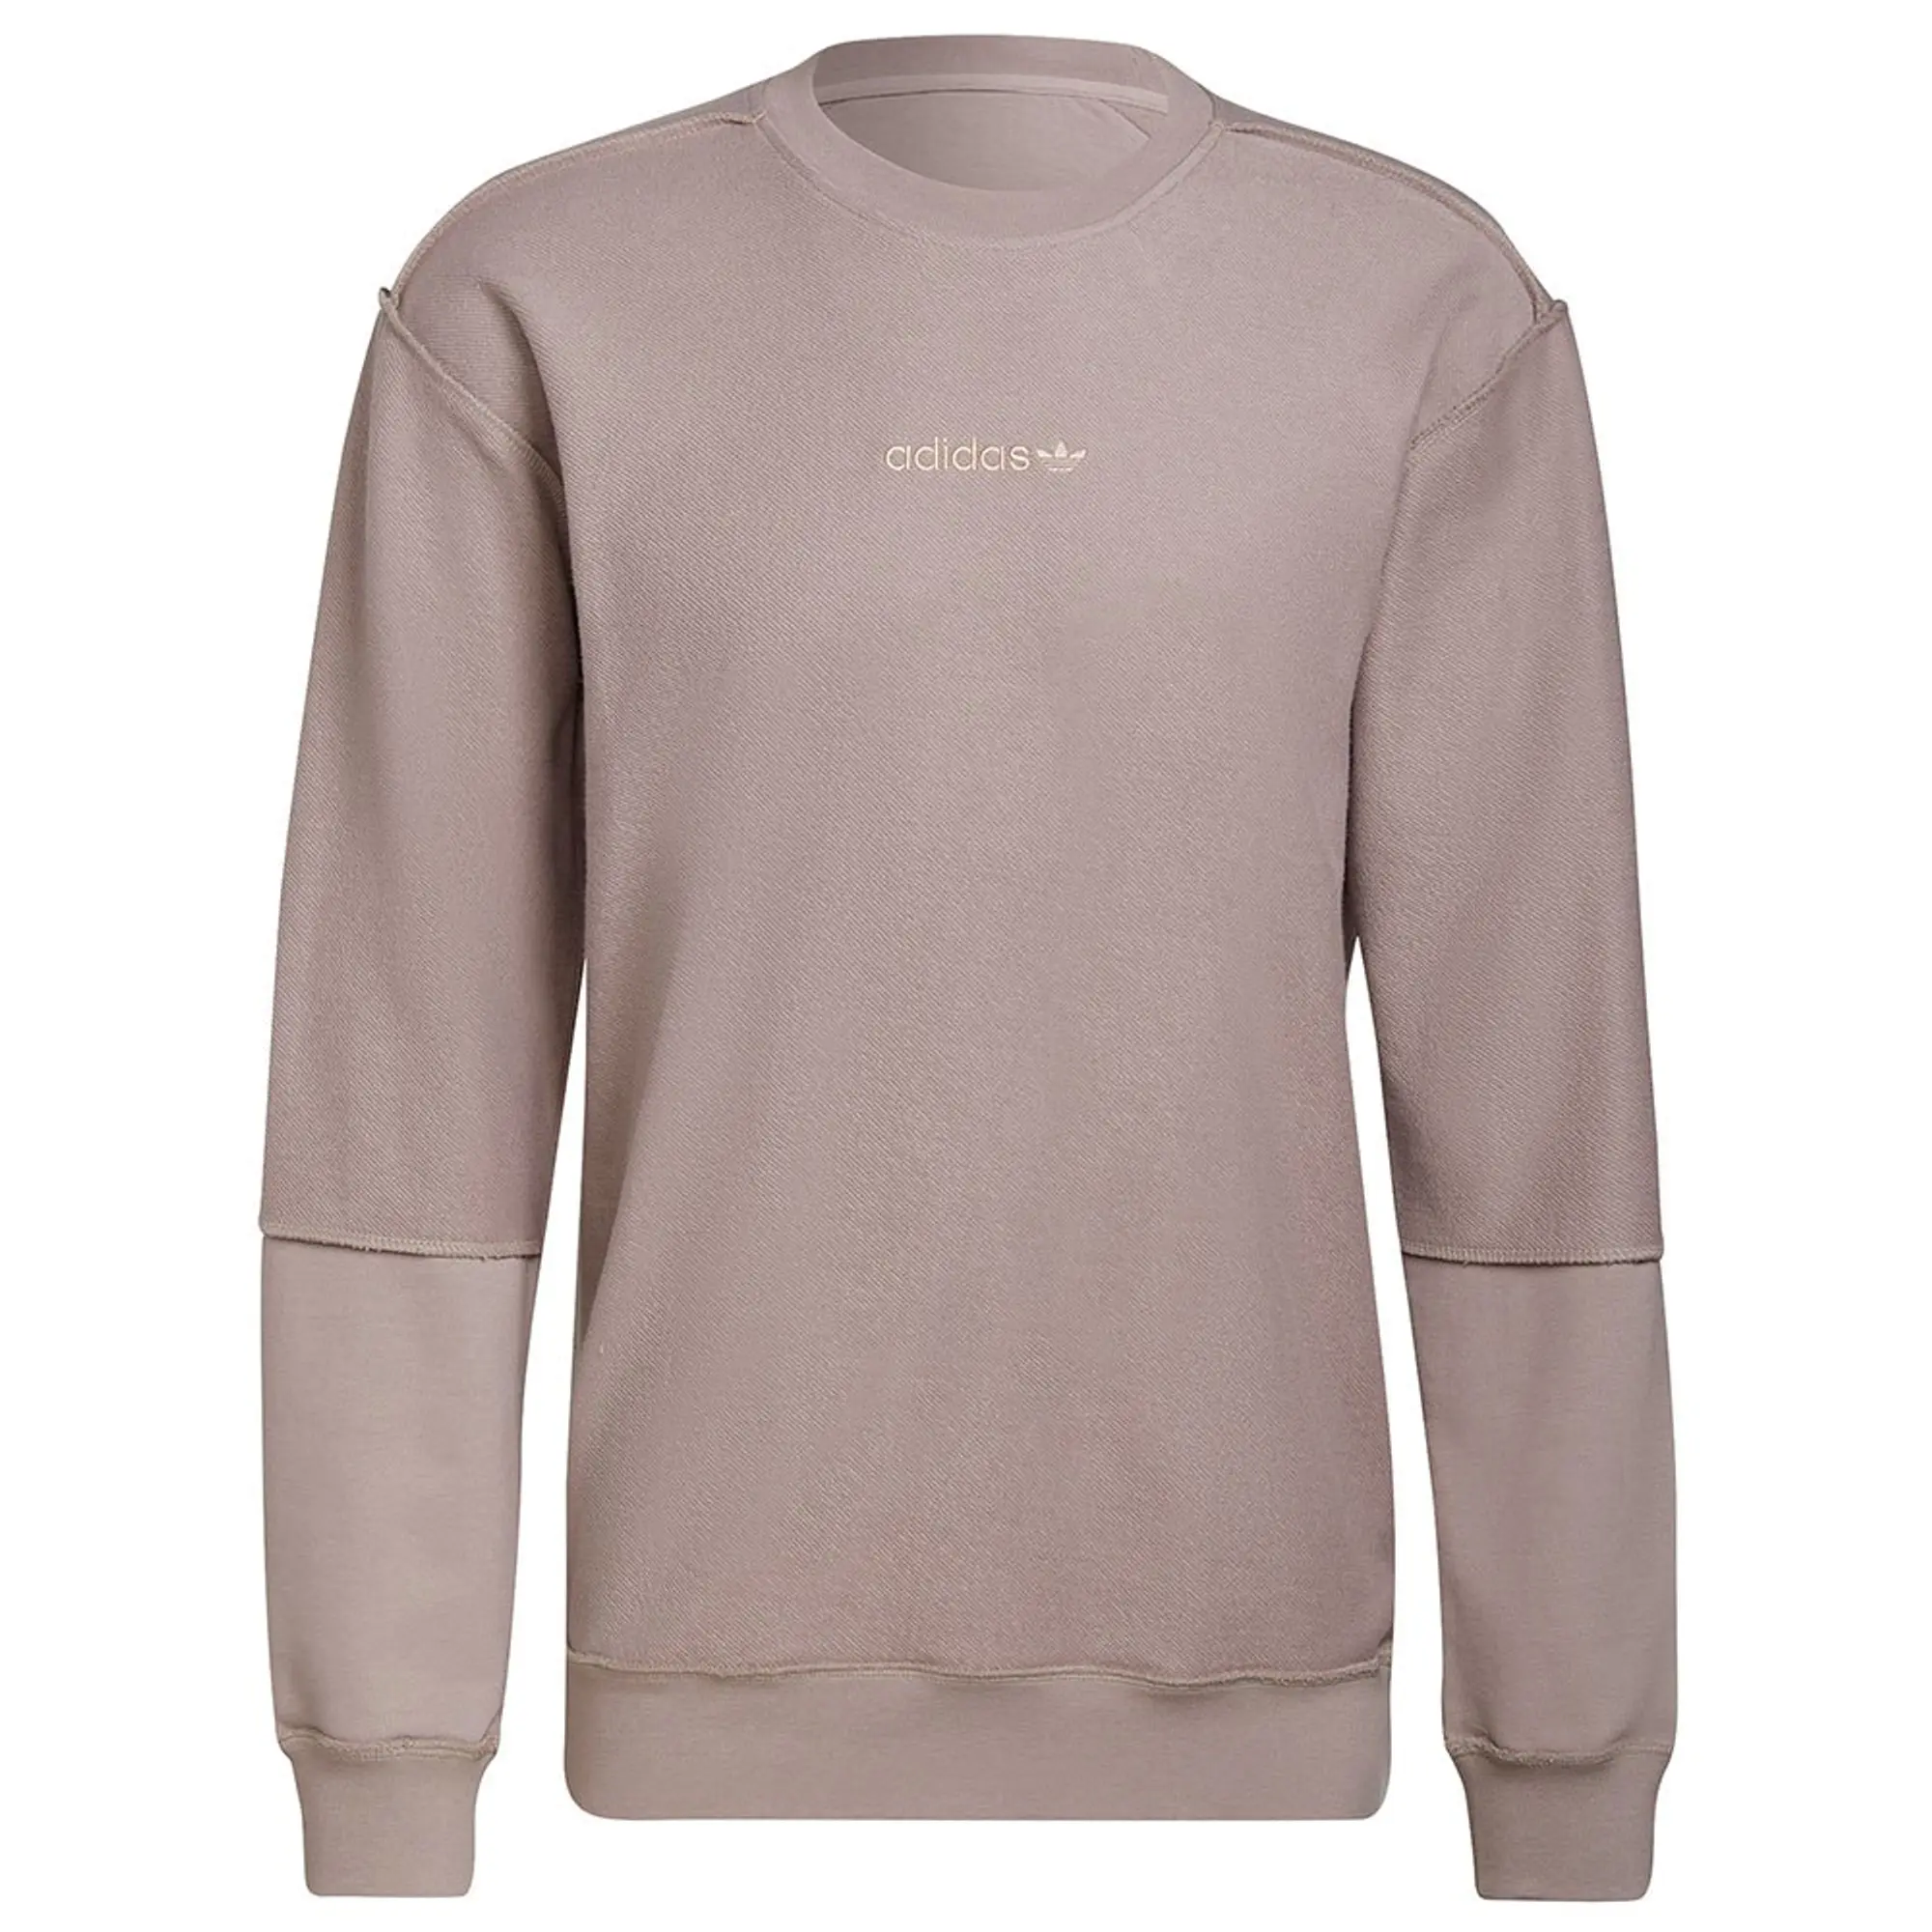 Adidas Originals Loopback Crew Sweatshirt  - Grey